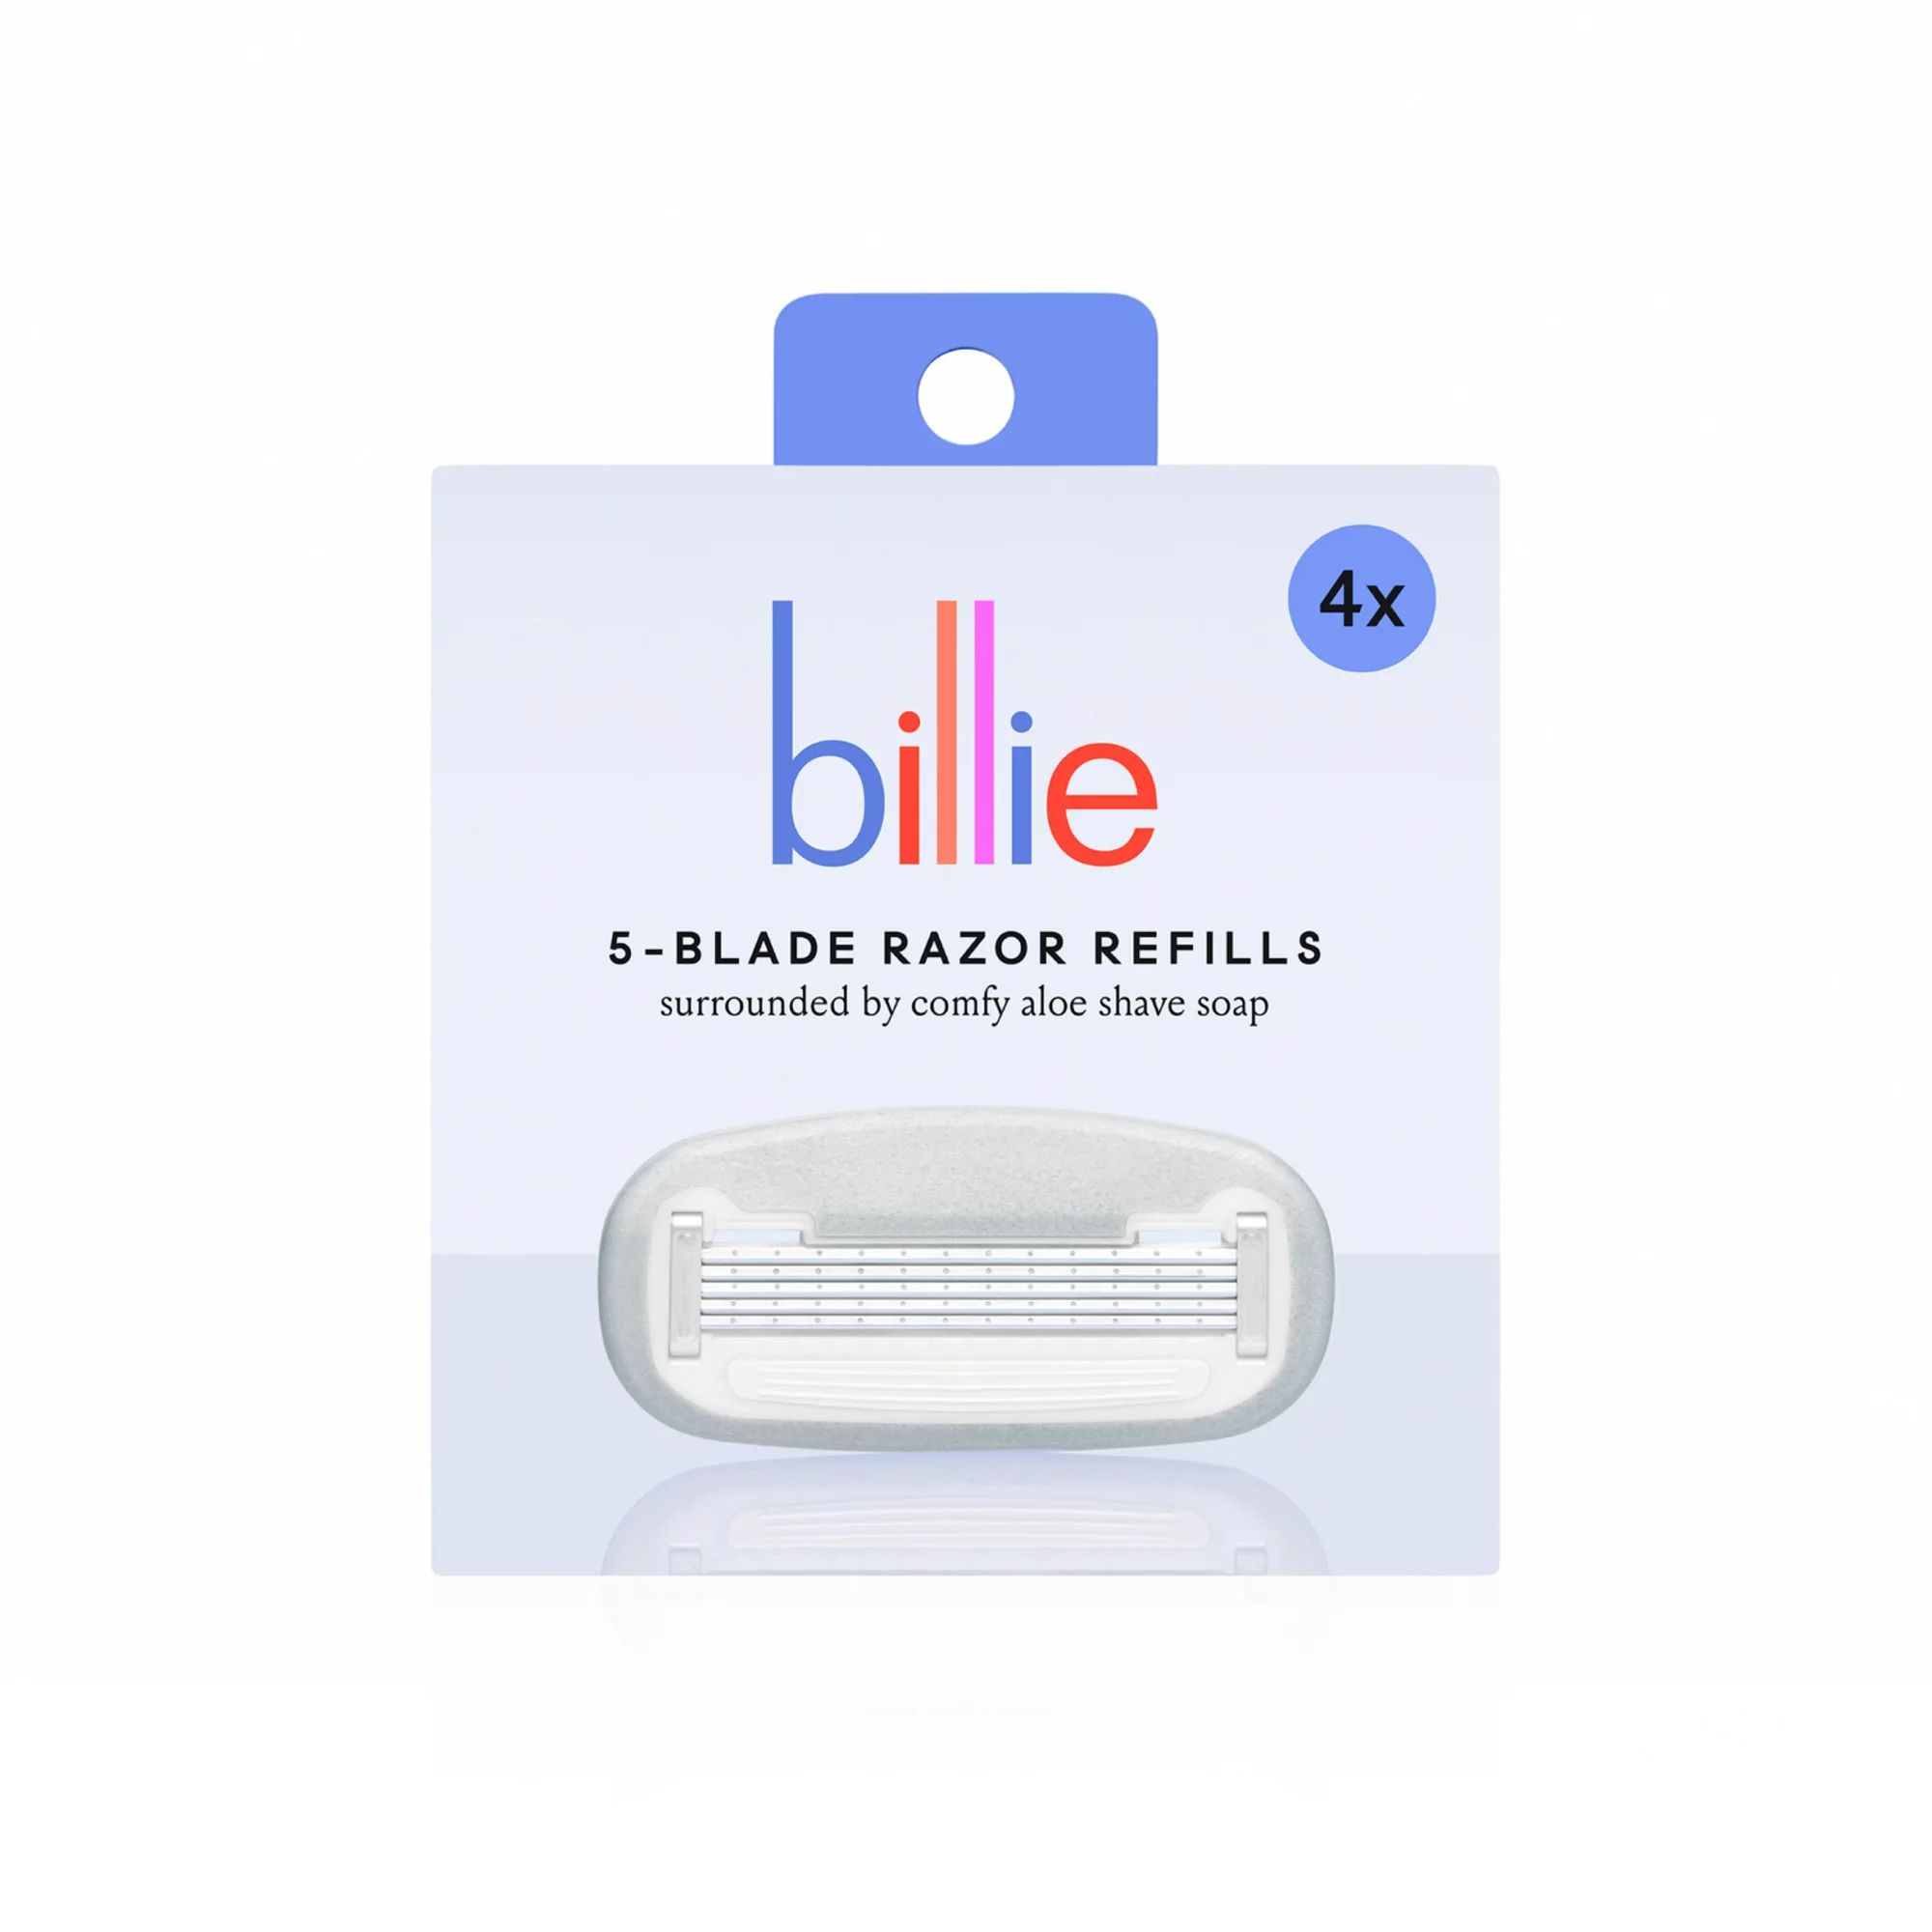 Billie Women’s Razor 5-Blade Refills - 4 count | Walmart (US)